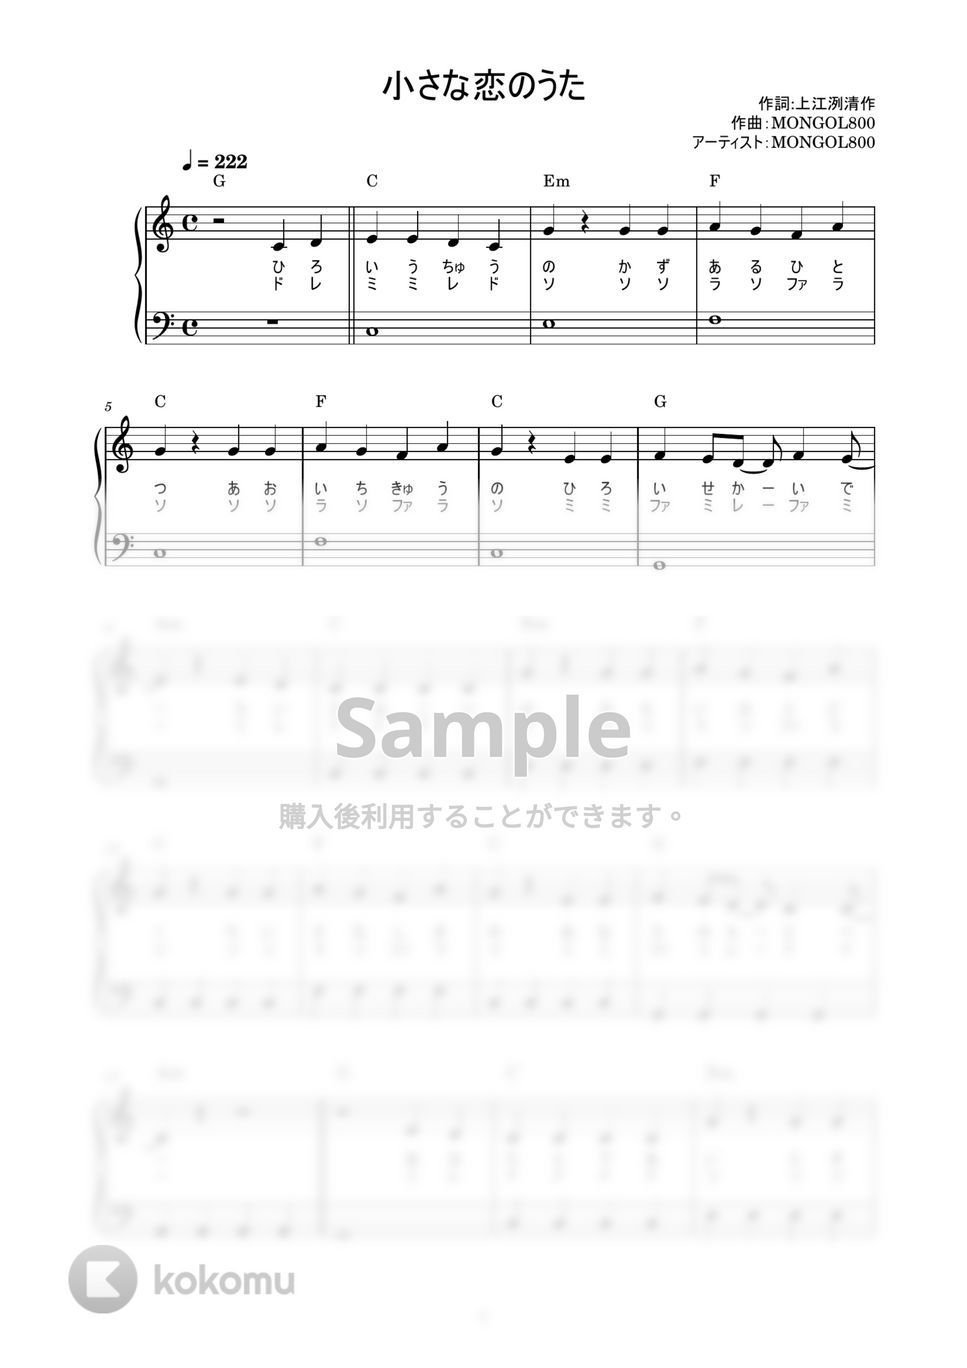 モンゴル800 - 小さな恋のうた (かんたん / 歌詞付き / ドレミ付き / 初心者) by piano.tokyo